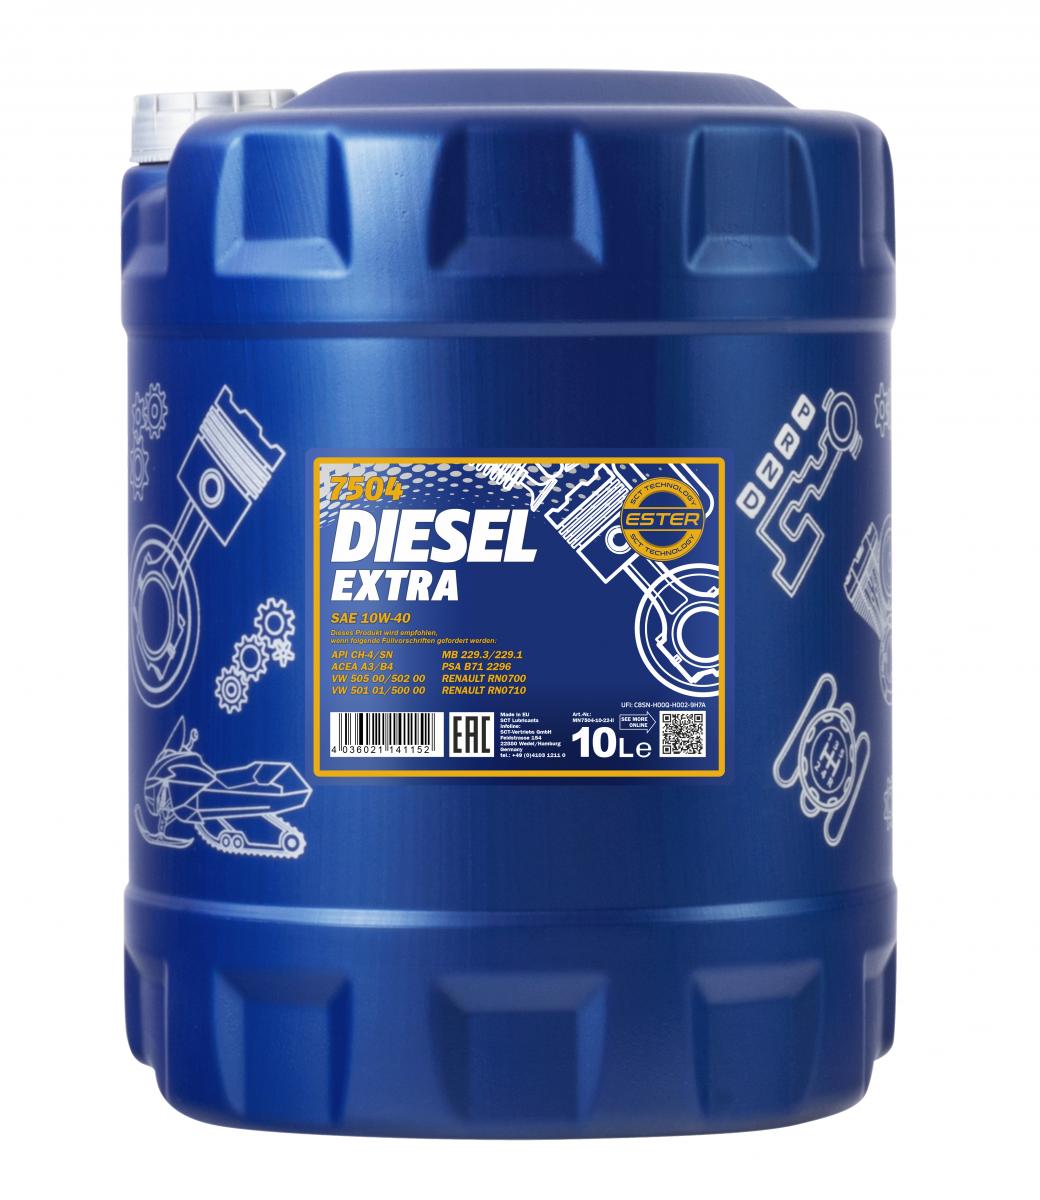 MN Diesel Extra 10W-40